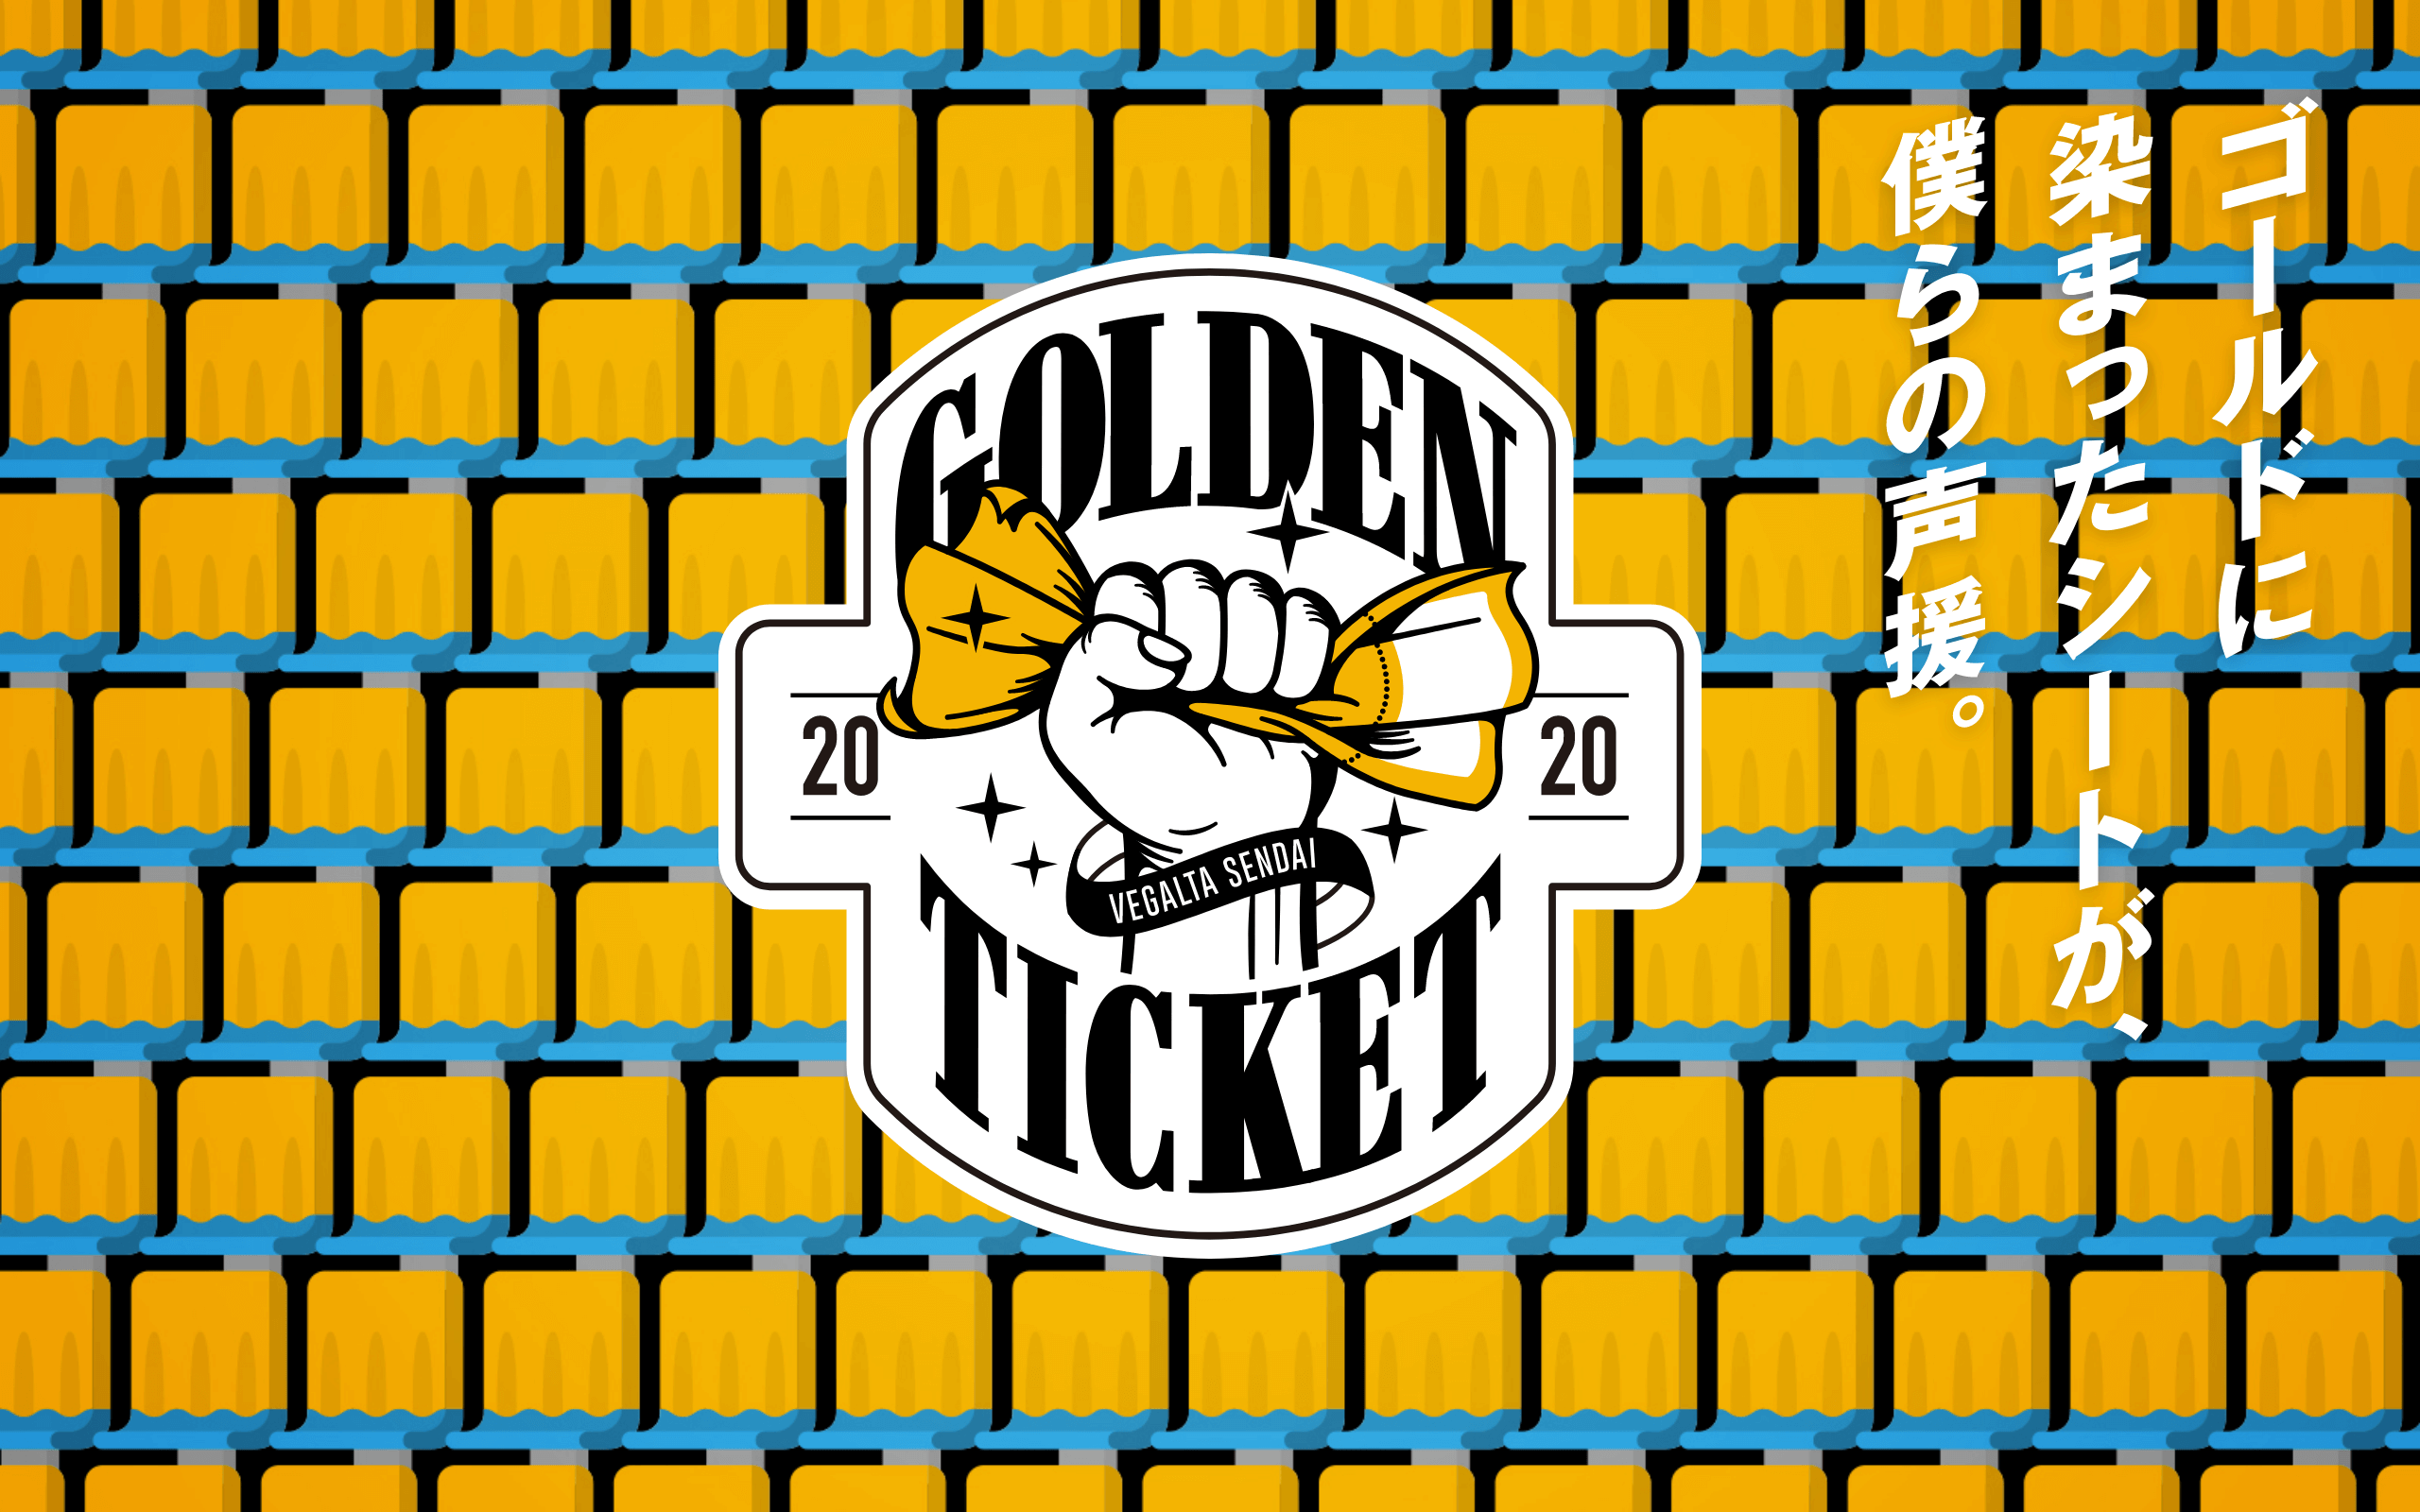 2020 GOLDEN TICKET ゴールドに染まったシートが僕らの声援。